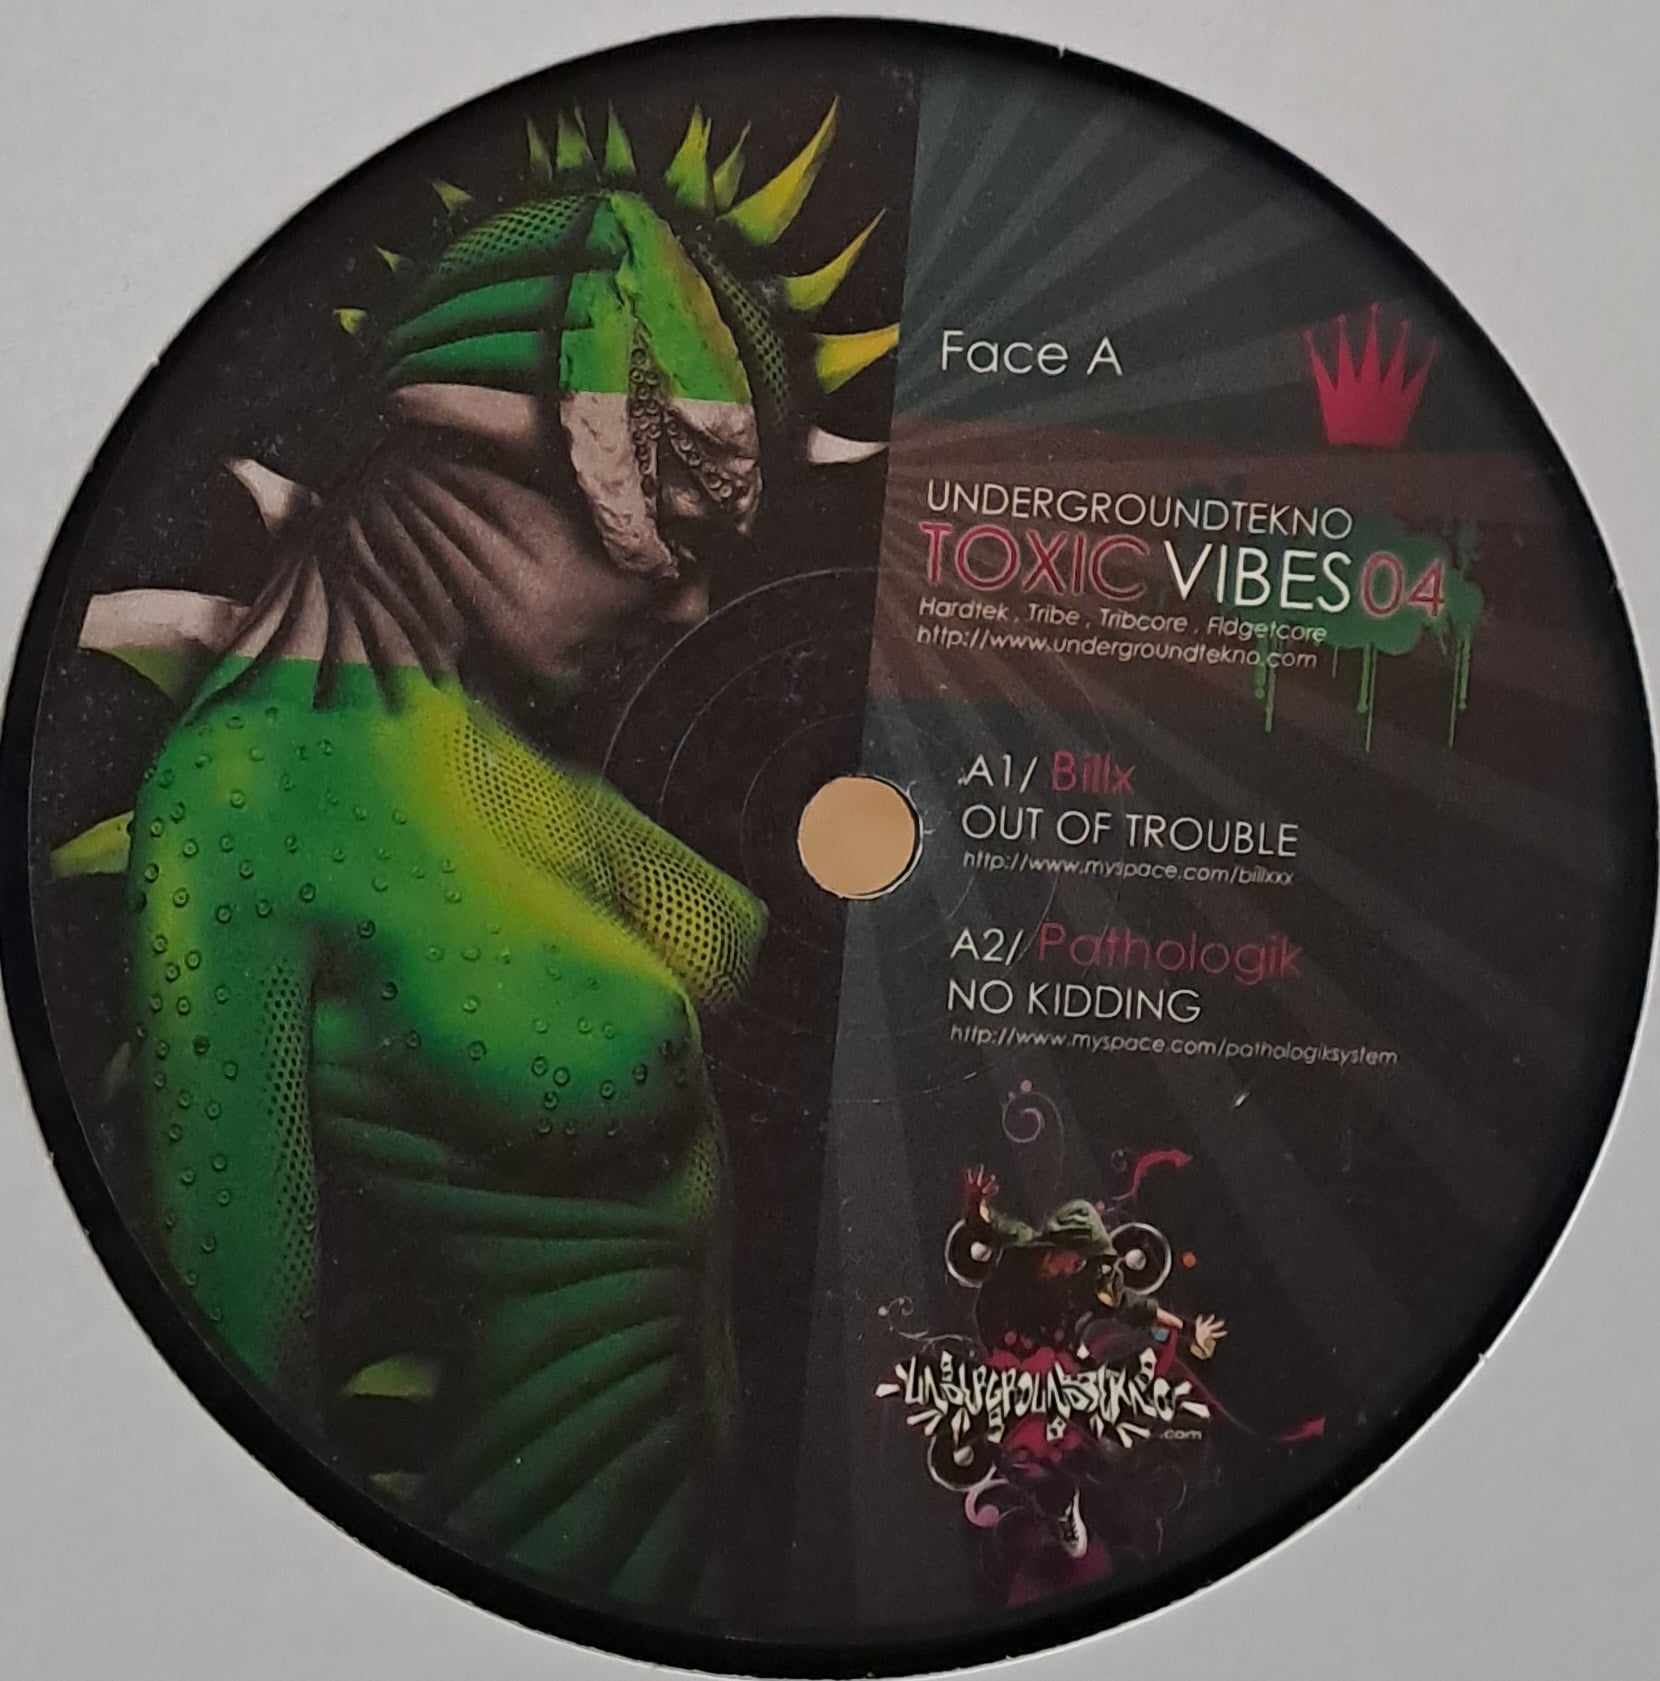 Toxic Vibes 04 - vinyle tribecore